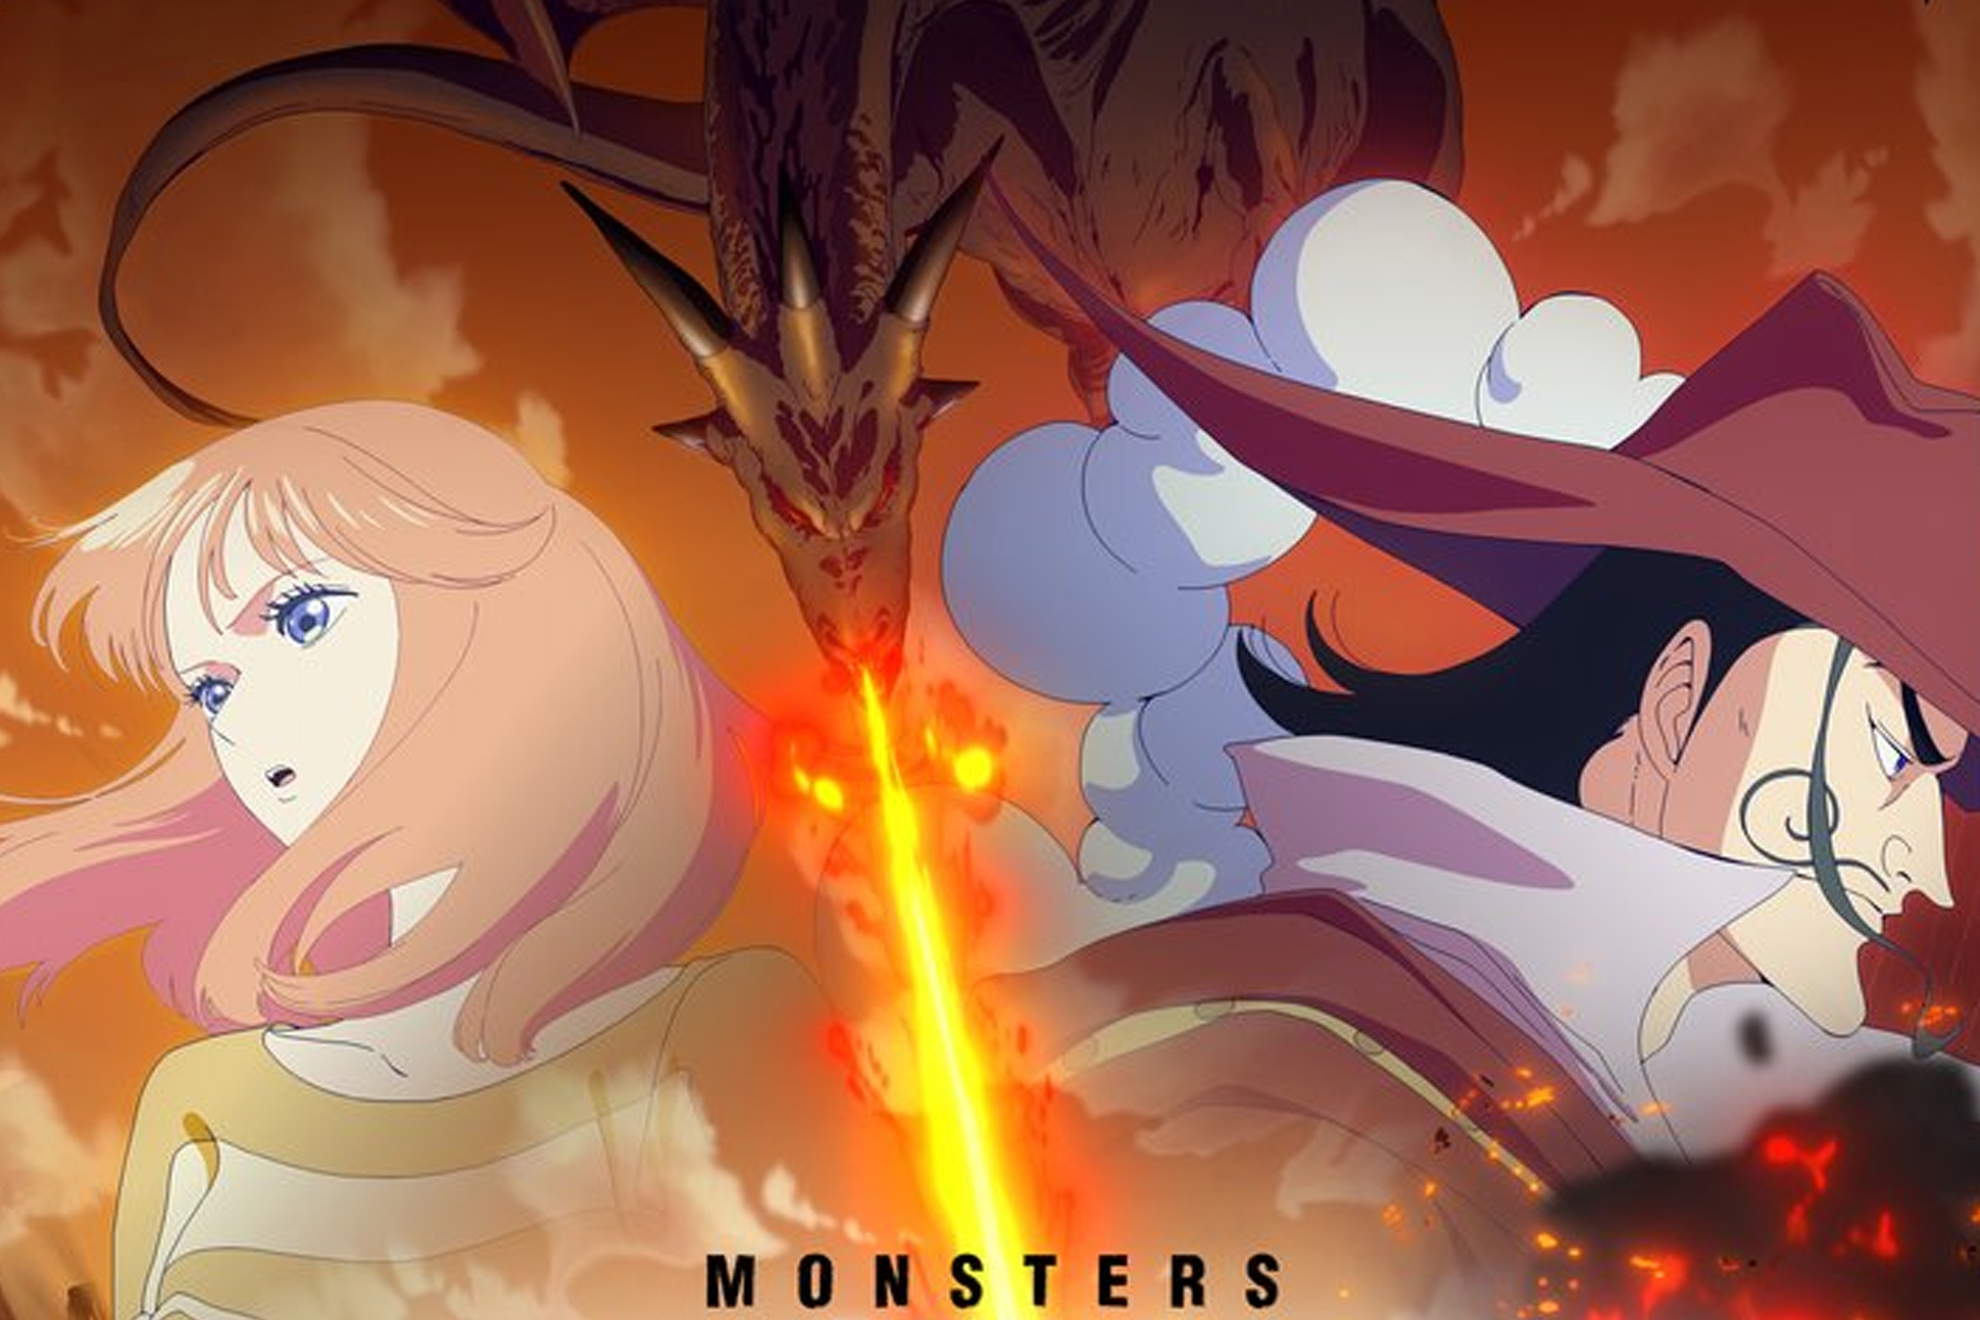 One Piece Monster, cul es la fecha de estreno del nuevo anime y dnde podremos verlo online?